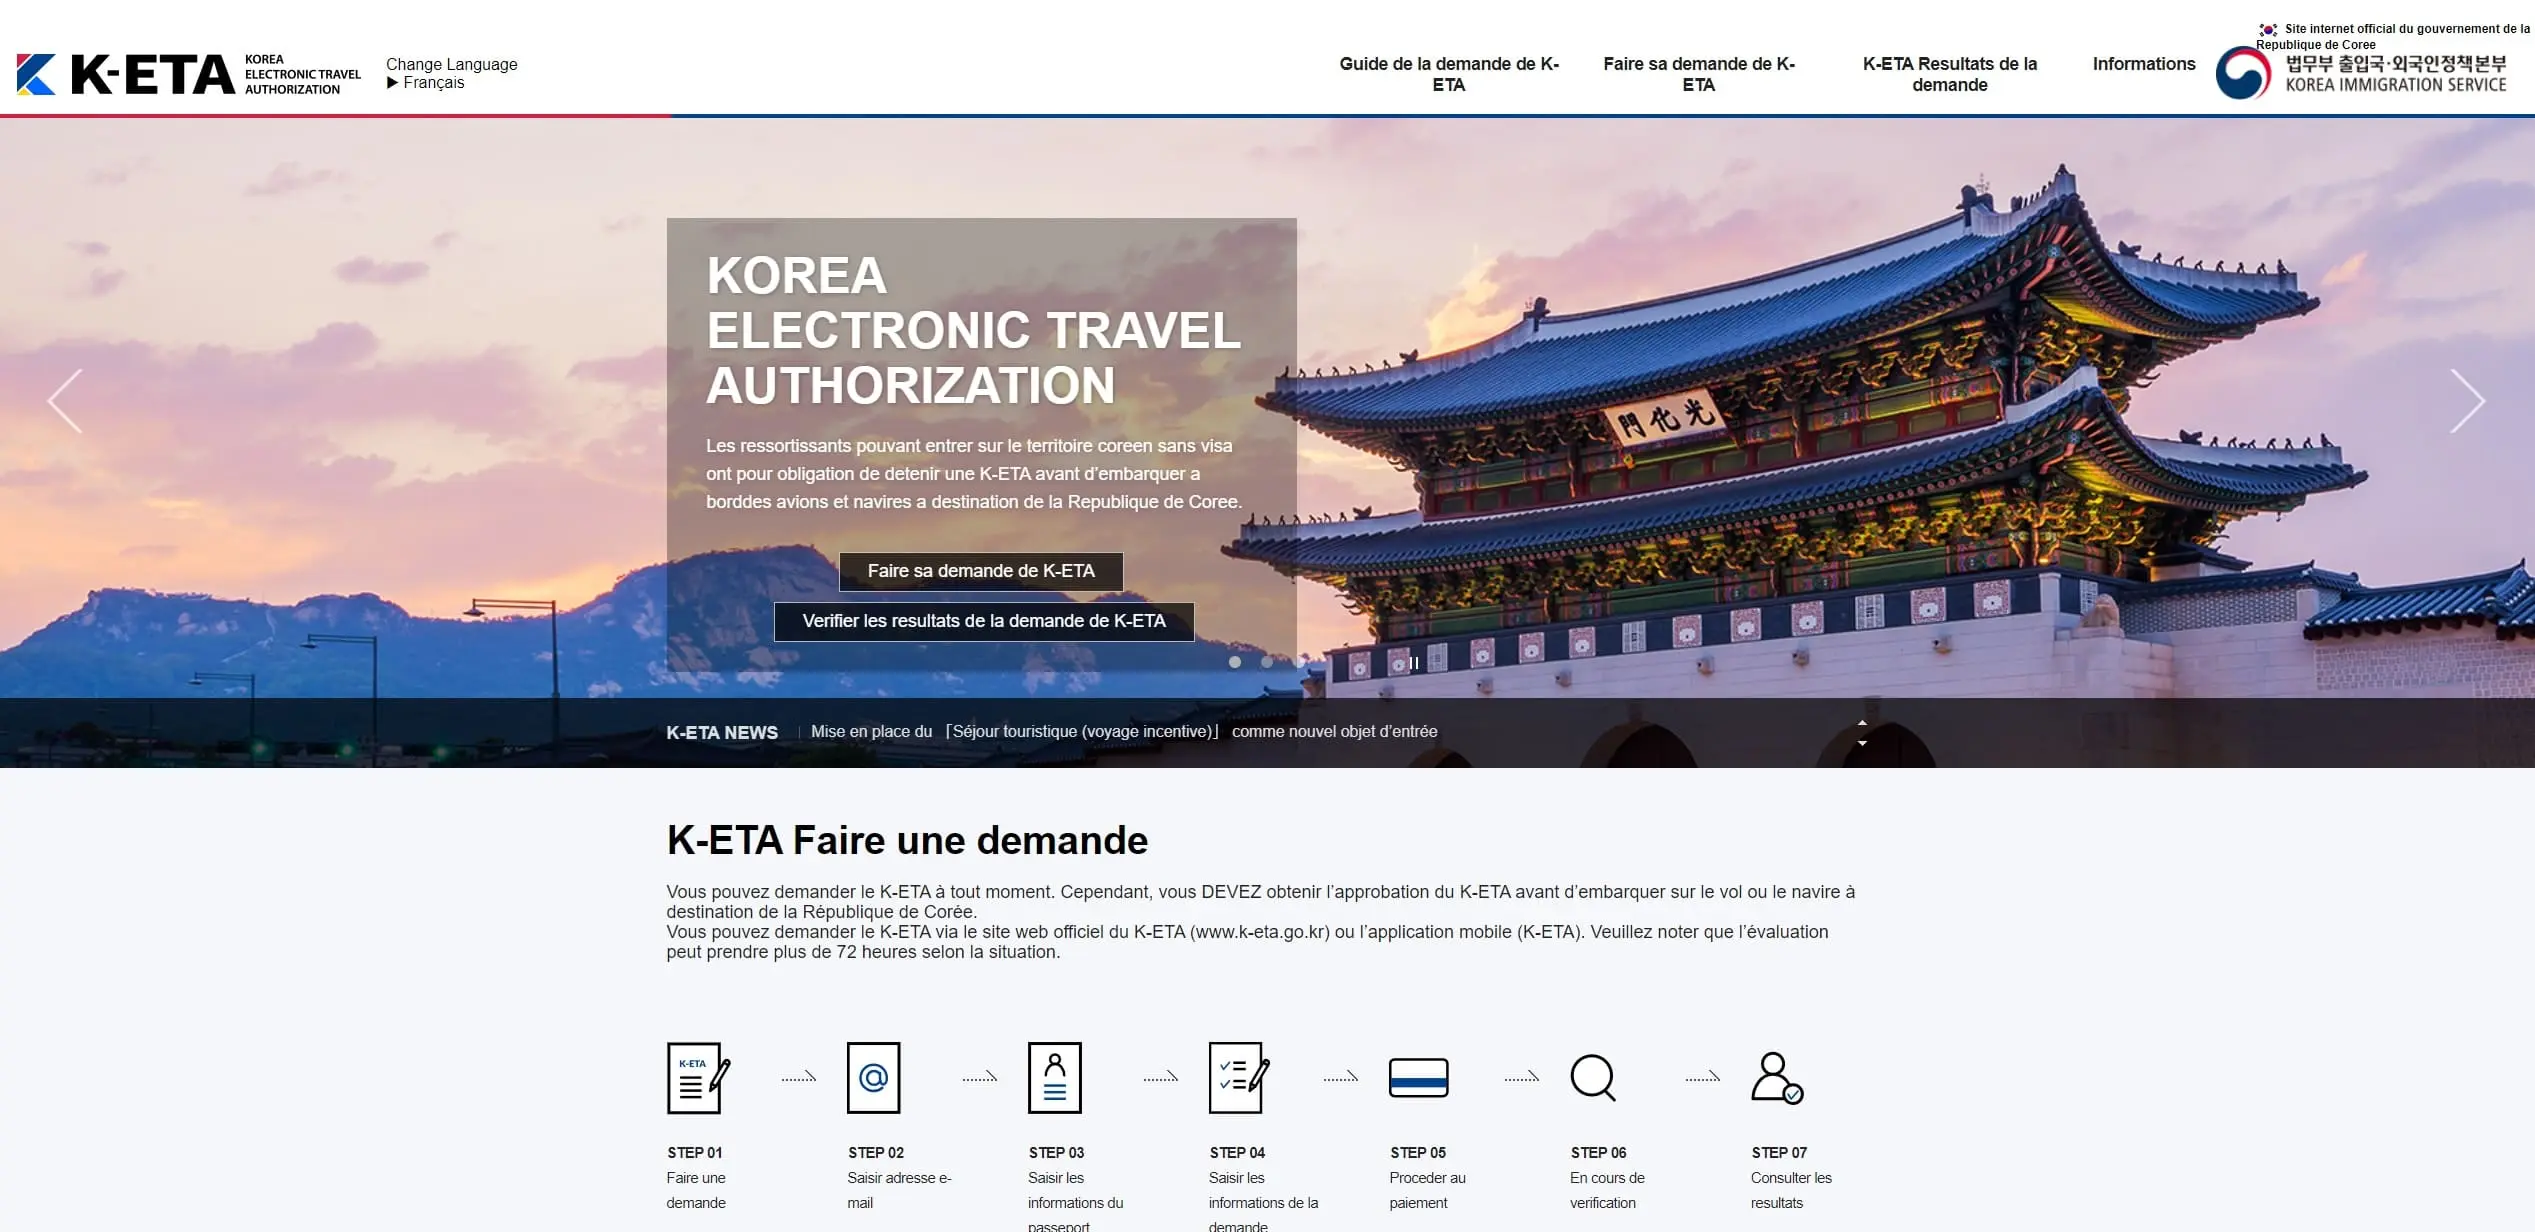 Aperçu du site officiel de demande d'autorisation de voyage électronique K-ETA pour la Corée du Sud